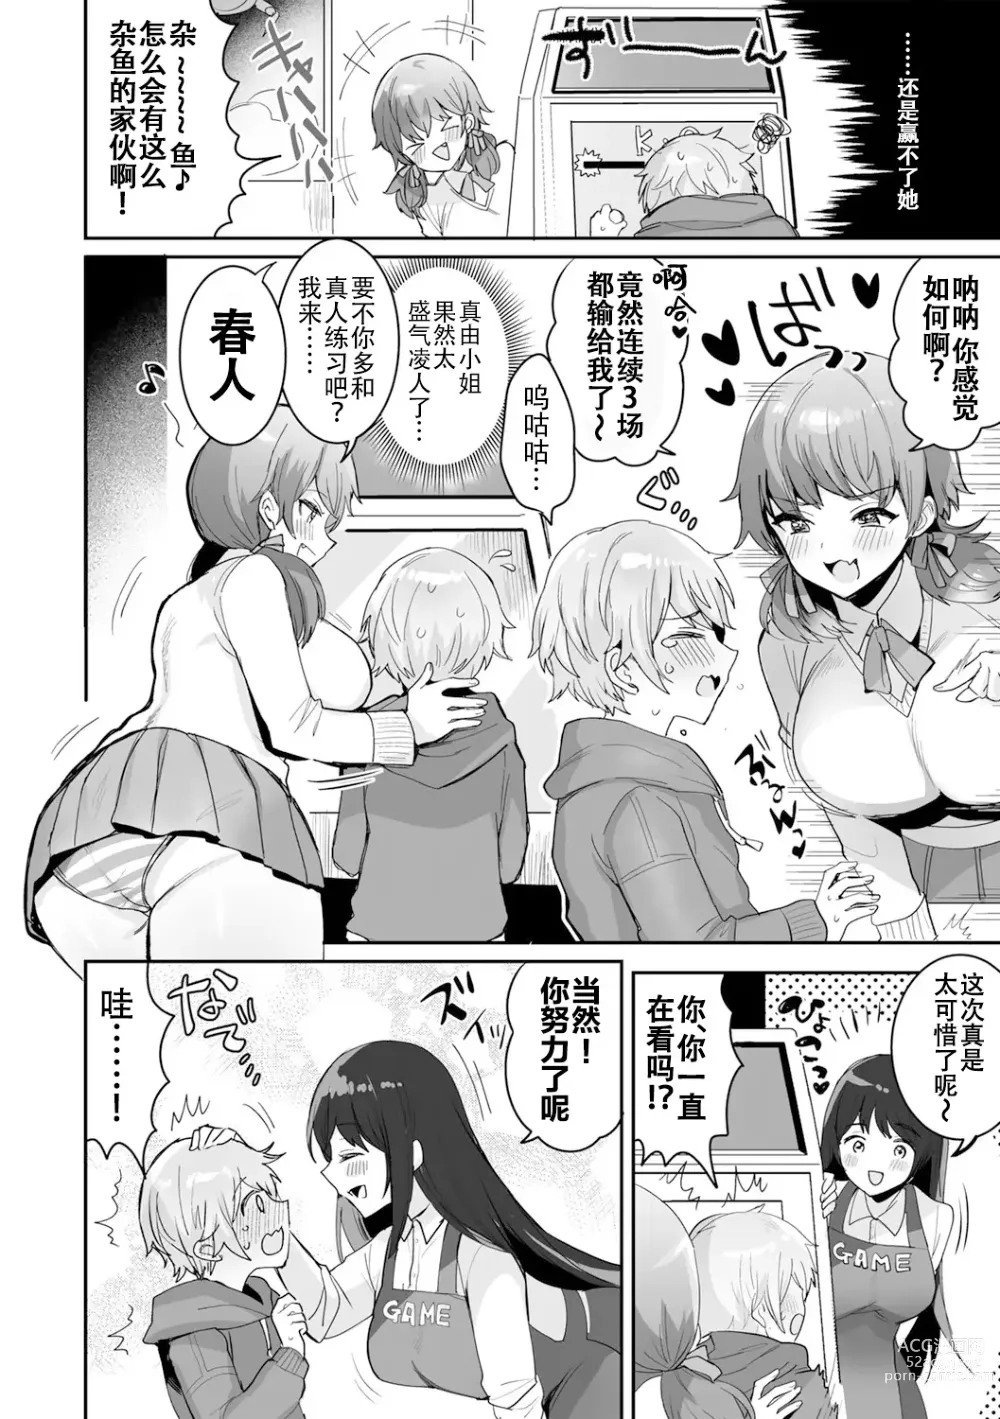 Page 4 of manga 游戏结束！~杂鱼正太君与雌小鬼小姐~